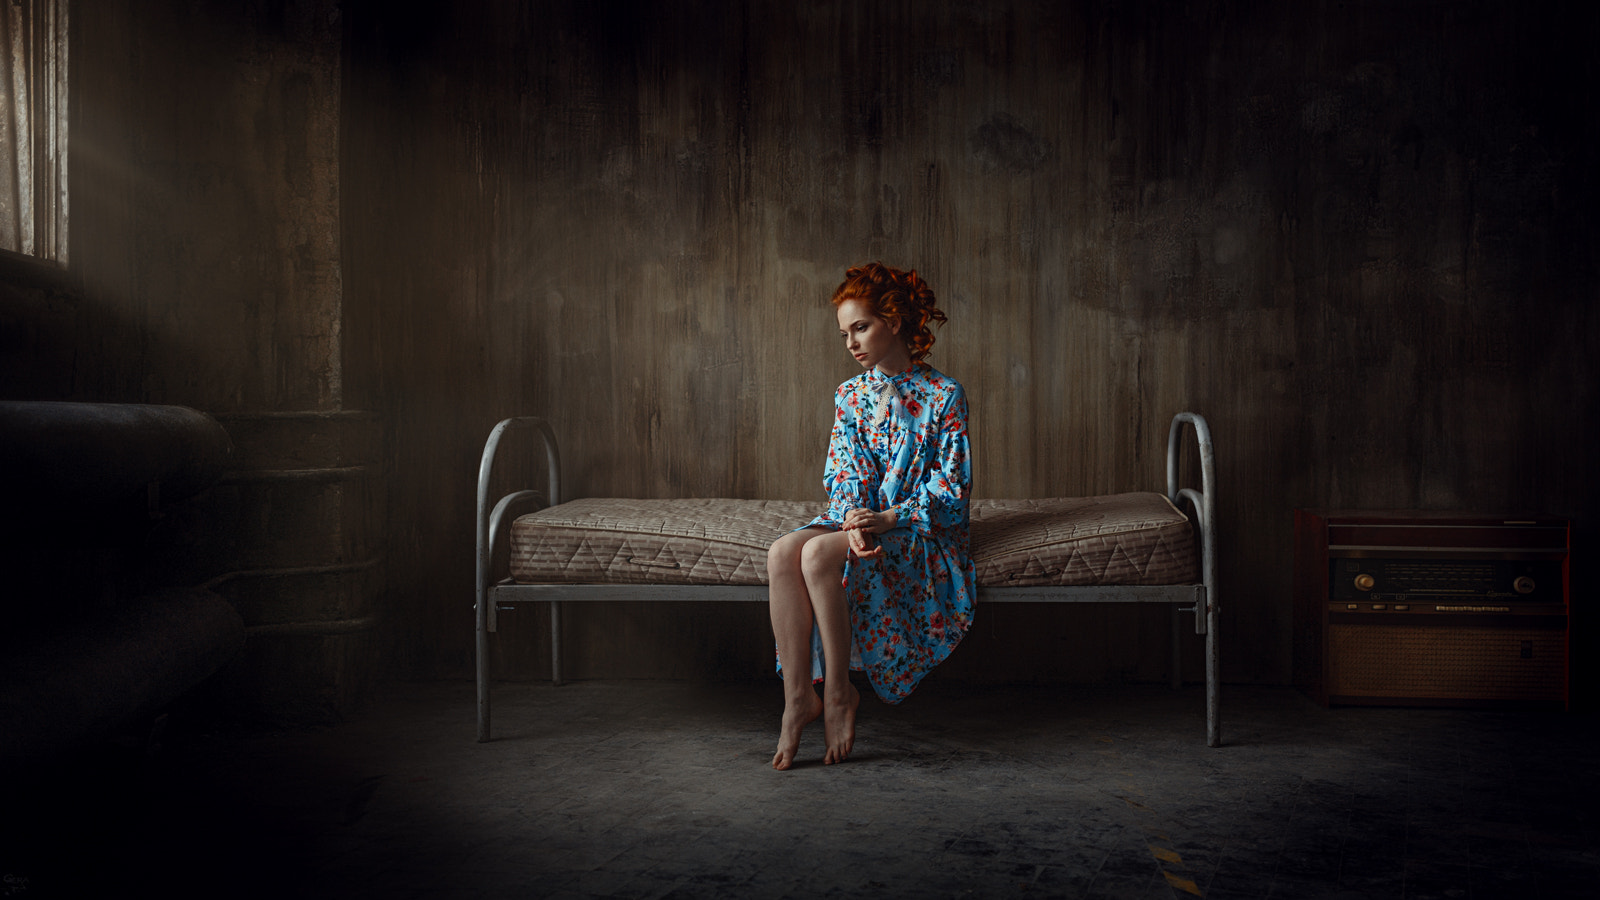 Фото Модель Настя сидит на кровати в полупустой комнате, фотограф Георгий Чернядьев